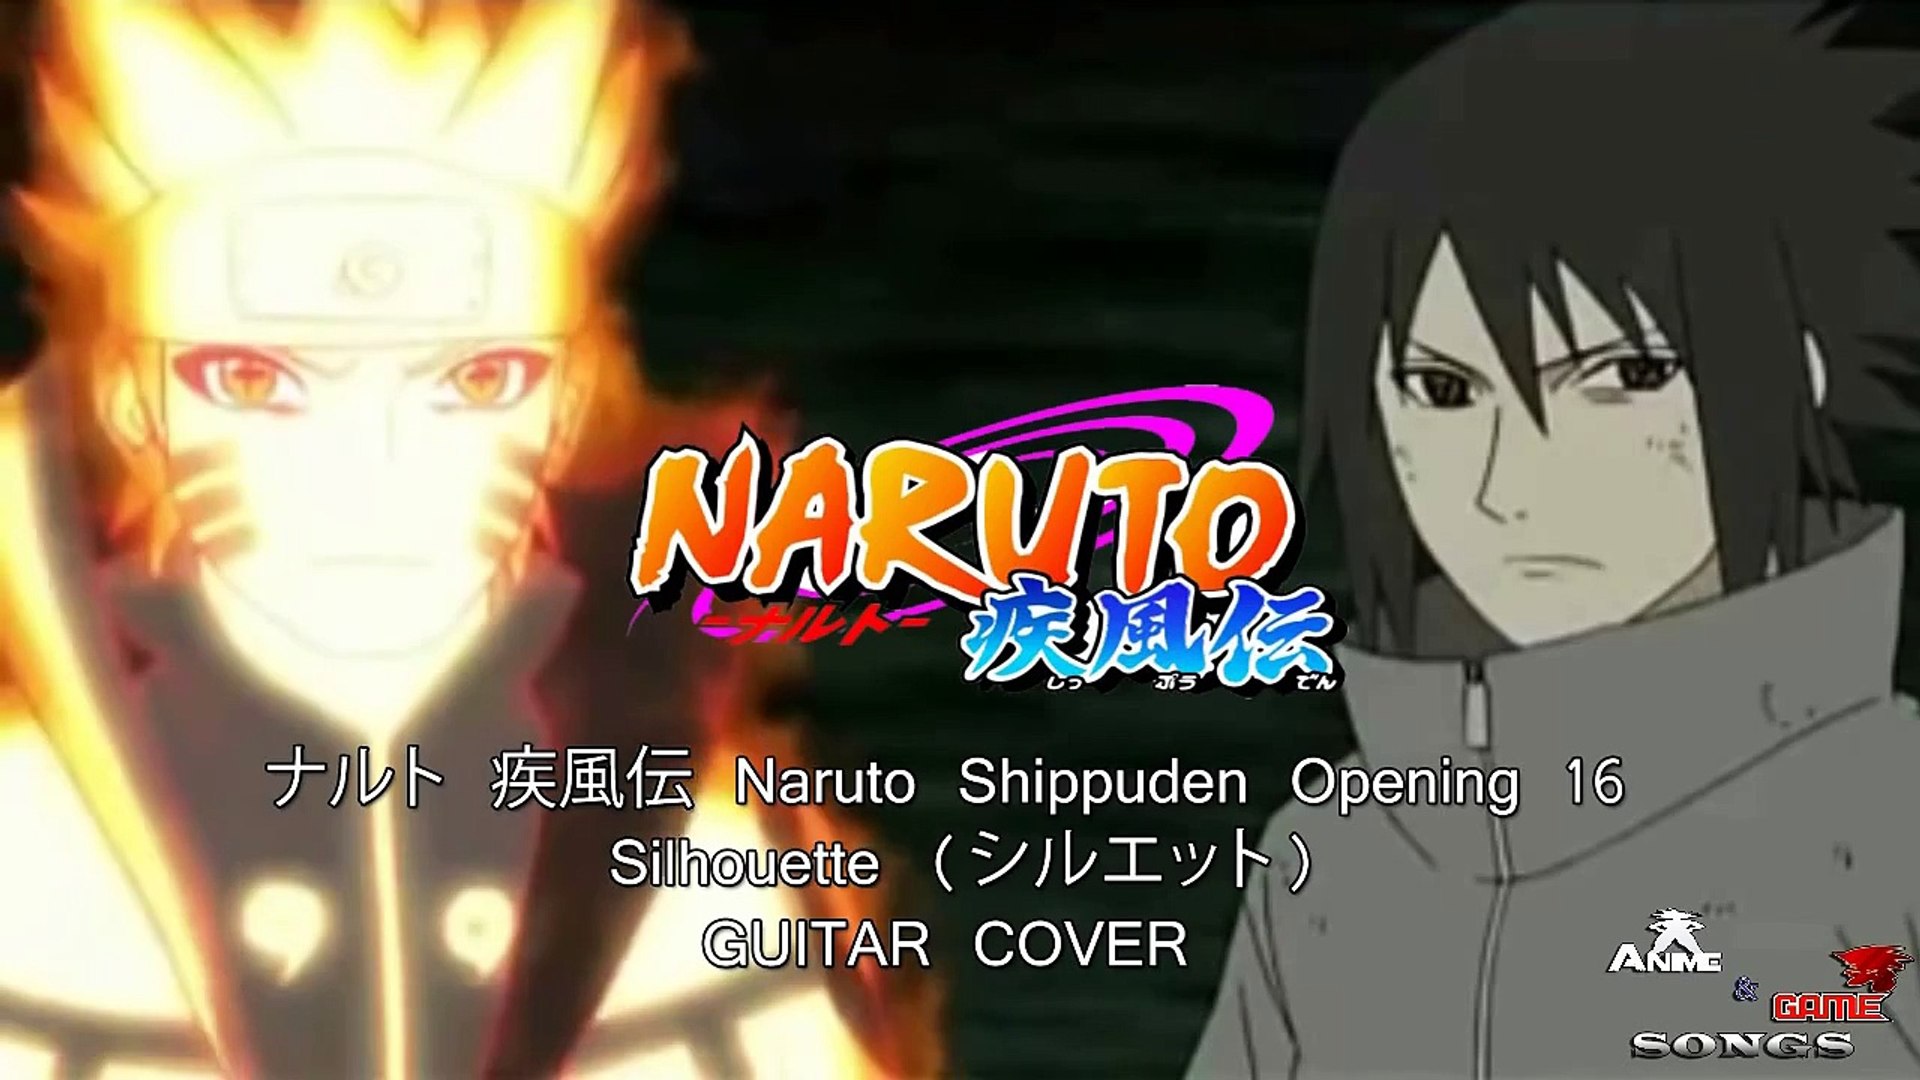 ナルト 疾風伝 Naruto Shippuden Opening 16 Silhouette シルエット Guitar Cover Instrumental Solo Dailymotion Video